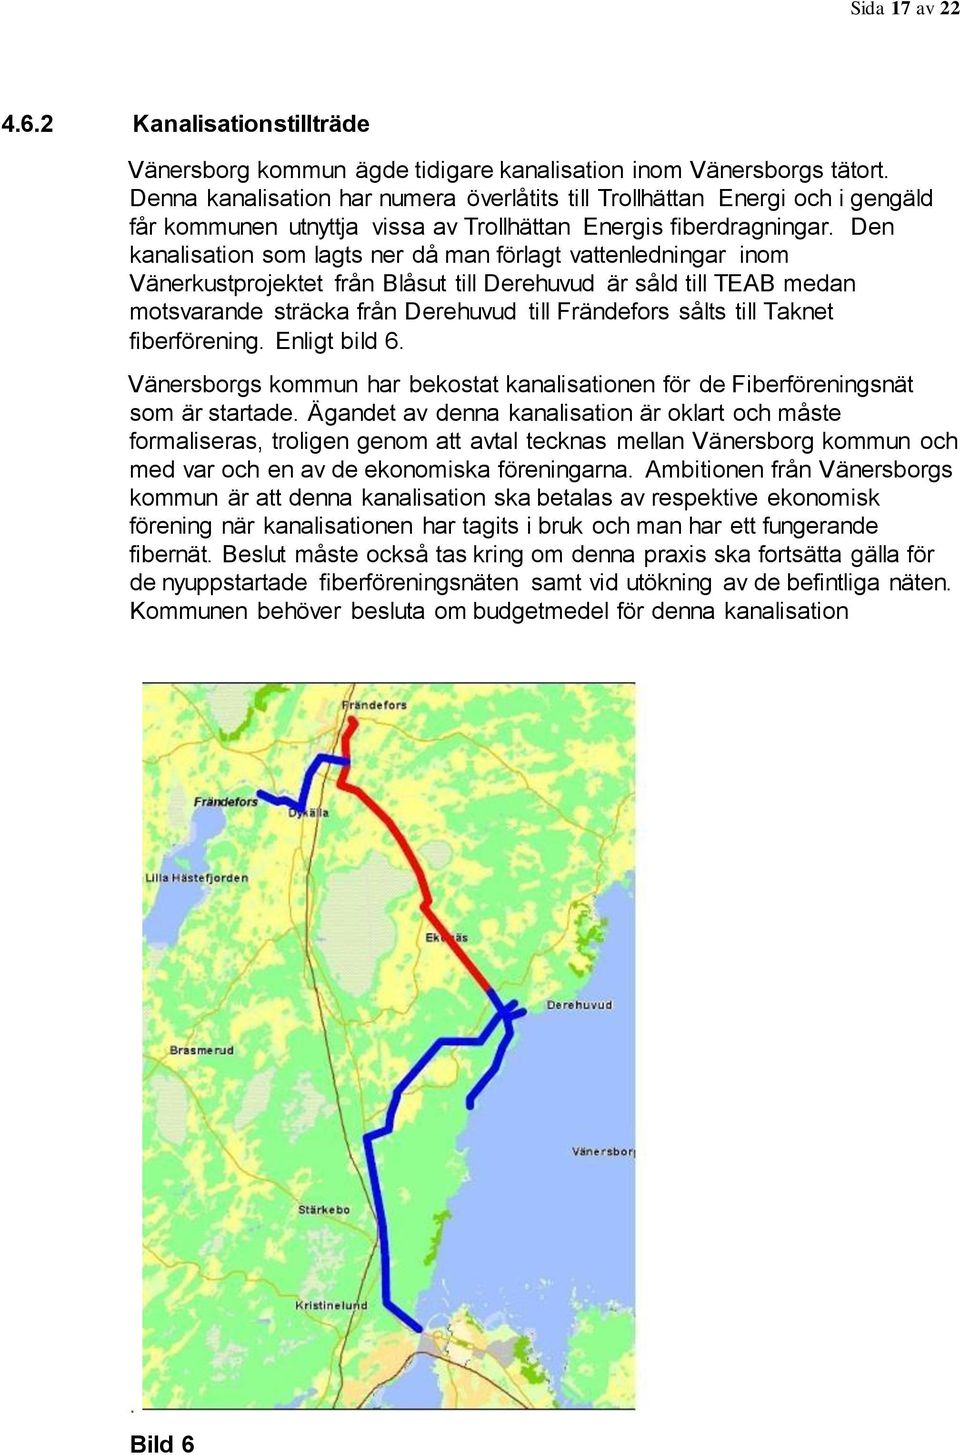 Den kanalisation som lagts ner då man förlagt vattenledningar inom Vänerkustprojektet från Blåsut till Derehuvud är såld till TEAB medan motsvarande sträcka från Derehuvud till Frändefors sålts till